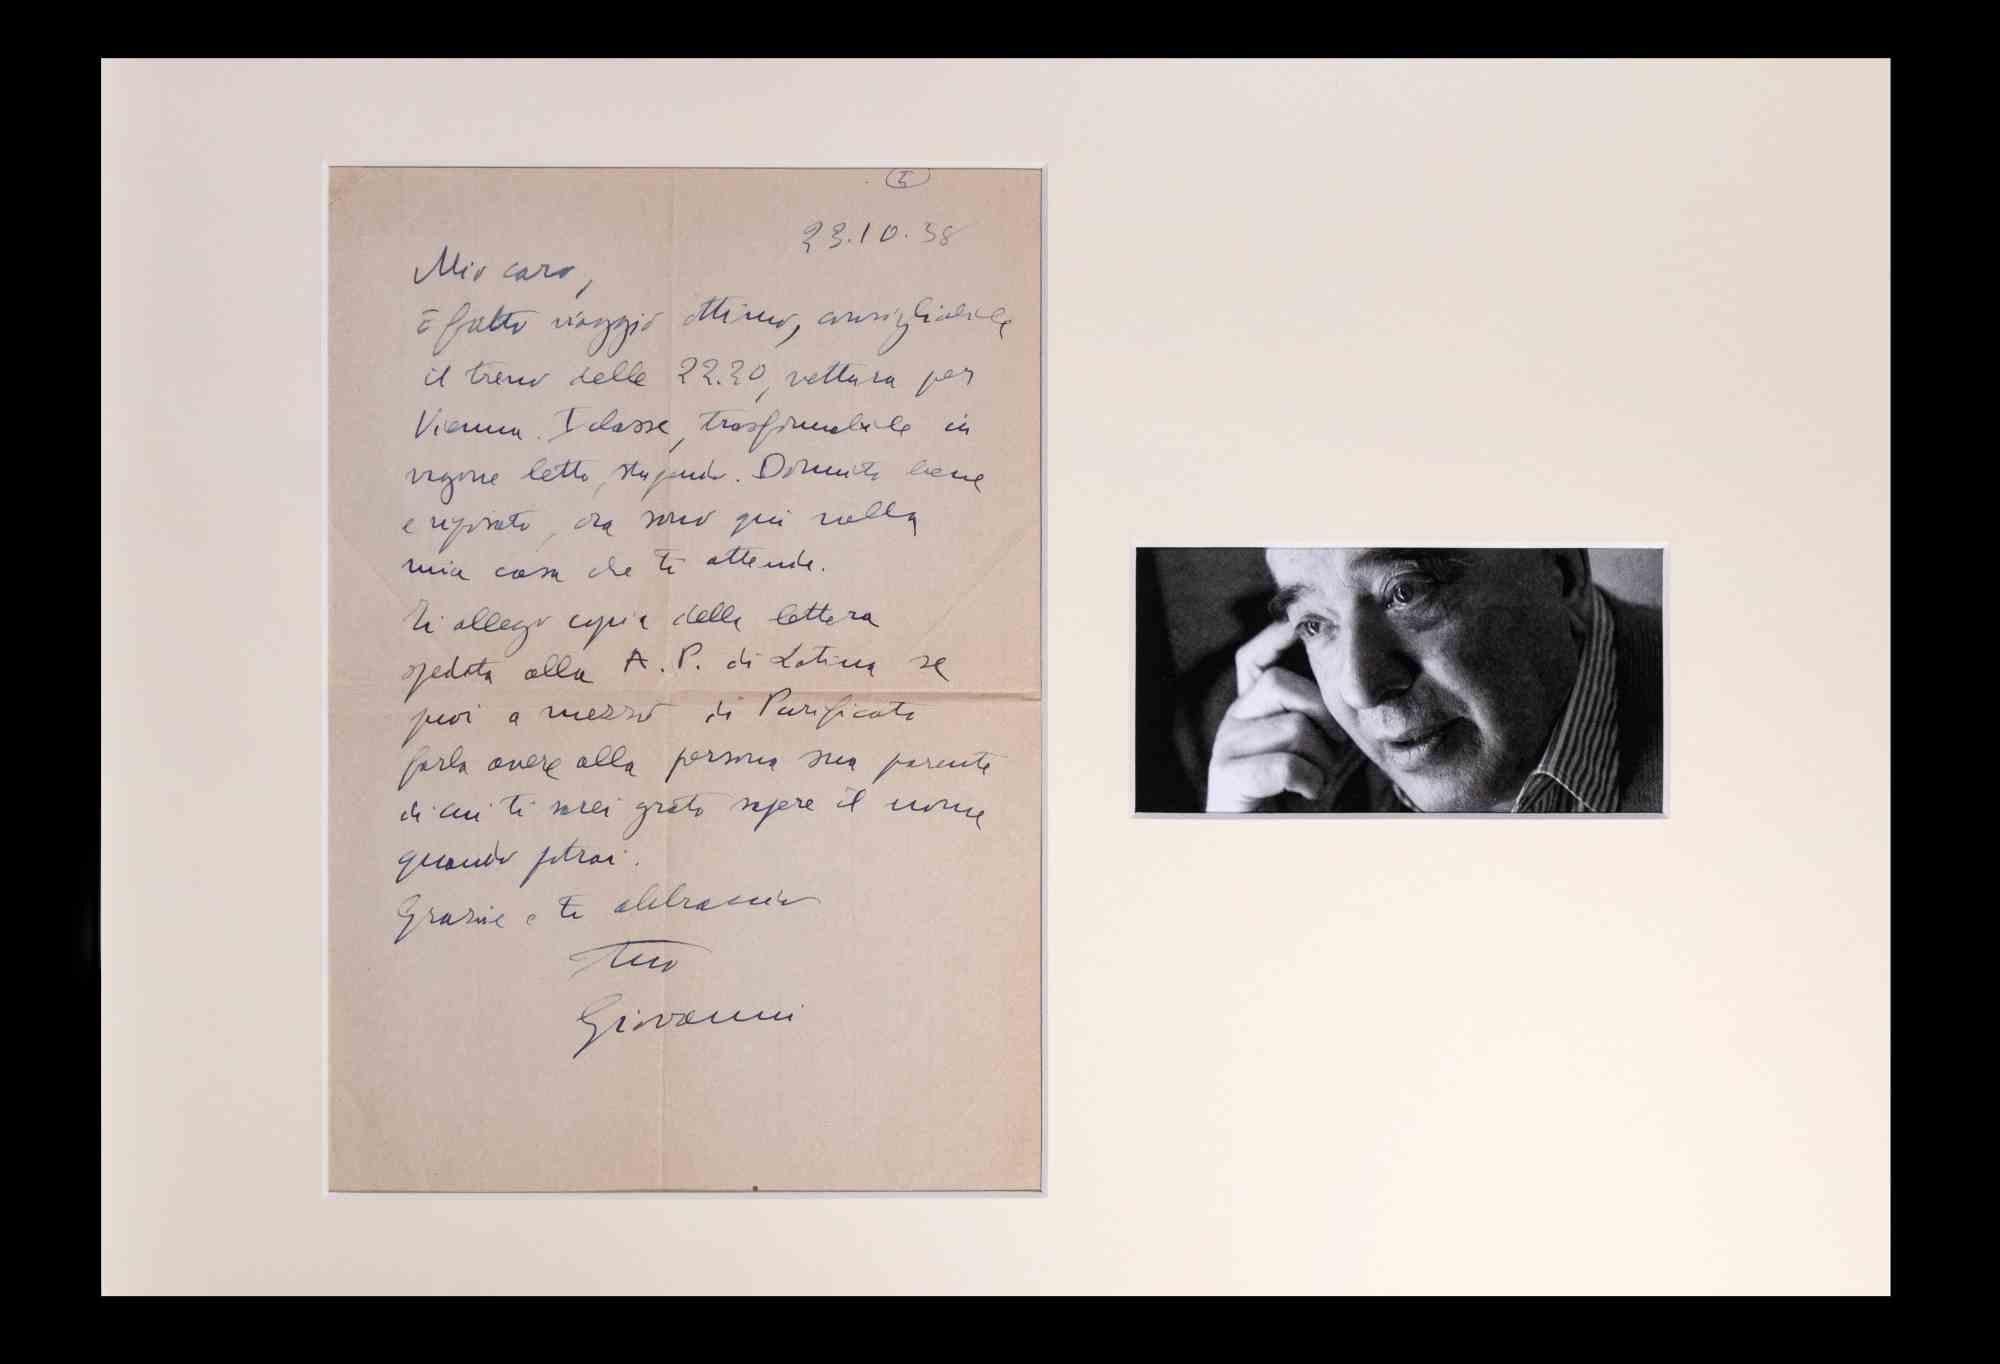 Lettre de Giovanni Comisso (1895-1969).

Contenu de la lettre : L'écrivain s'adresse probablement à un ami (" Mon cher... "), parlant de son voyage à Vienne dans le train de 22h30, en première classe. Il demande ensuite que quelqu'un ait une copie